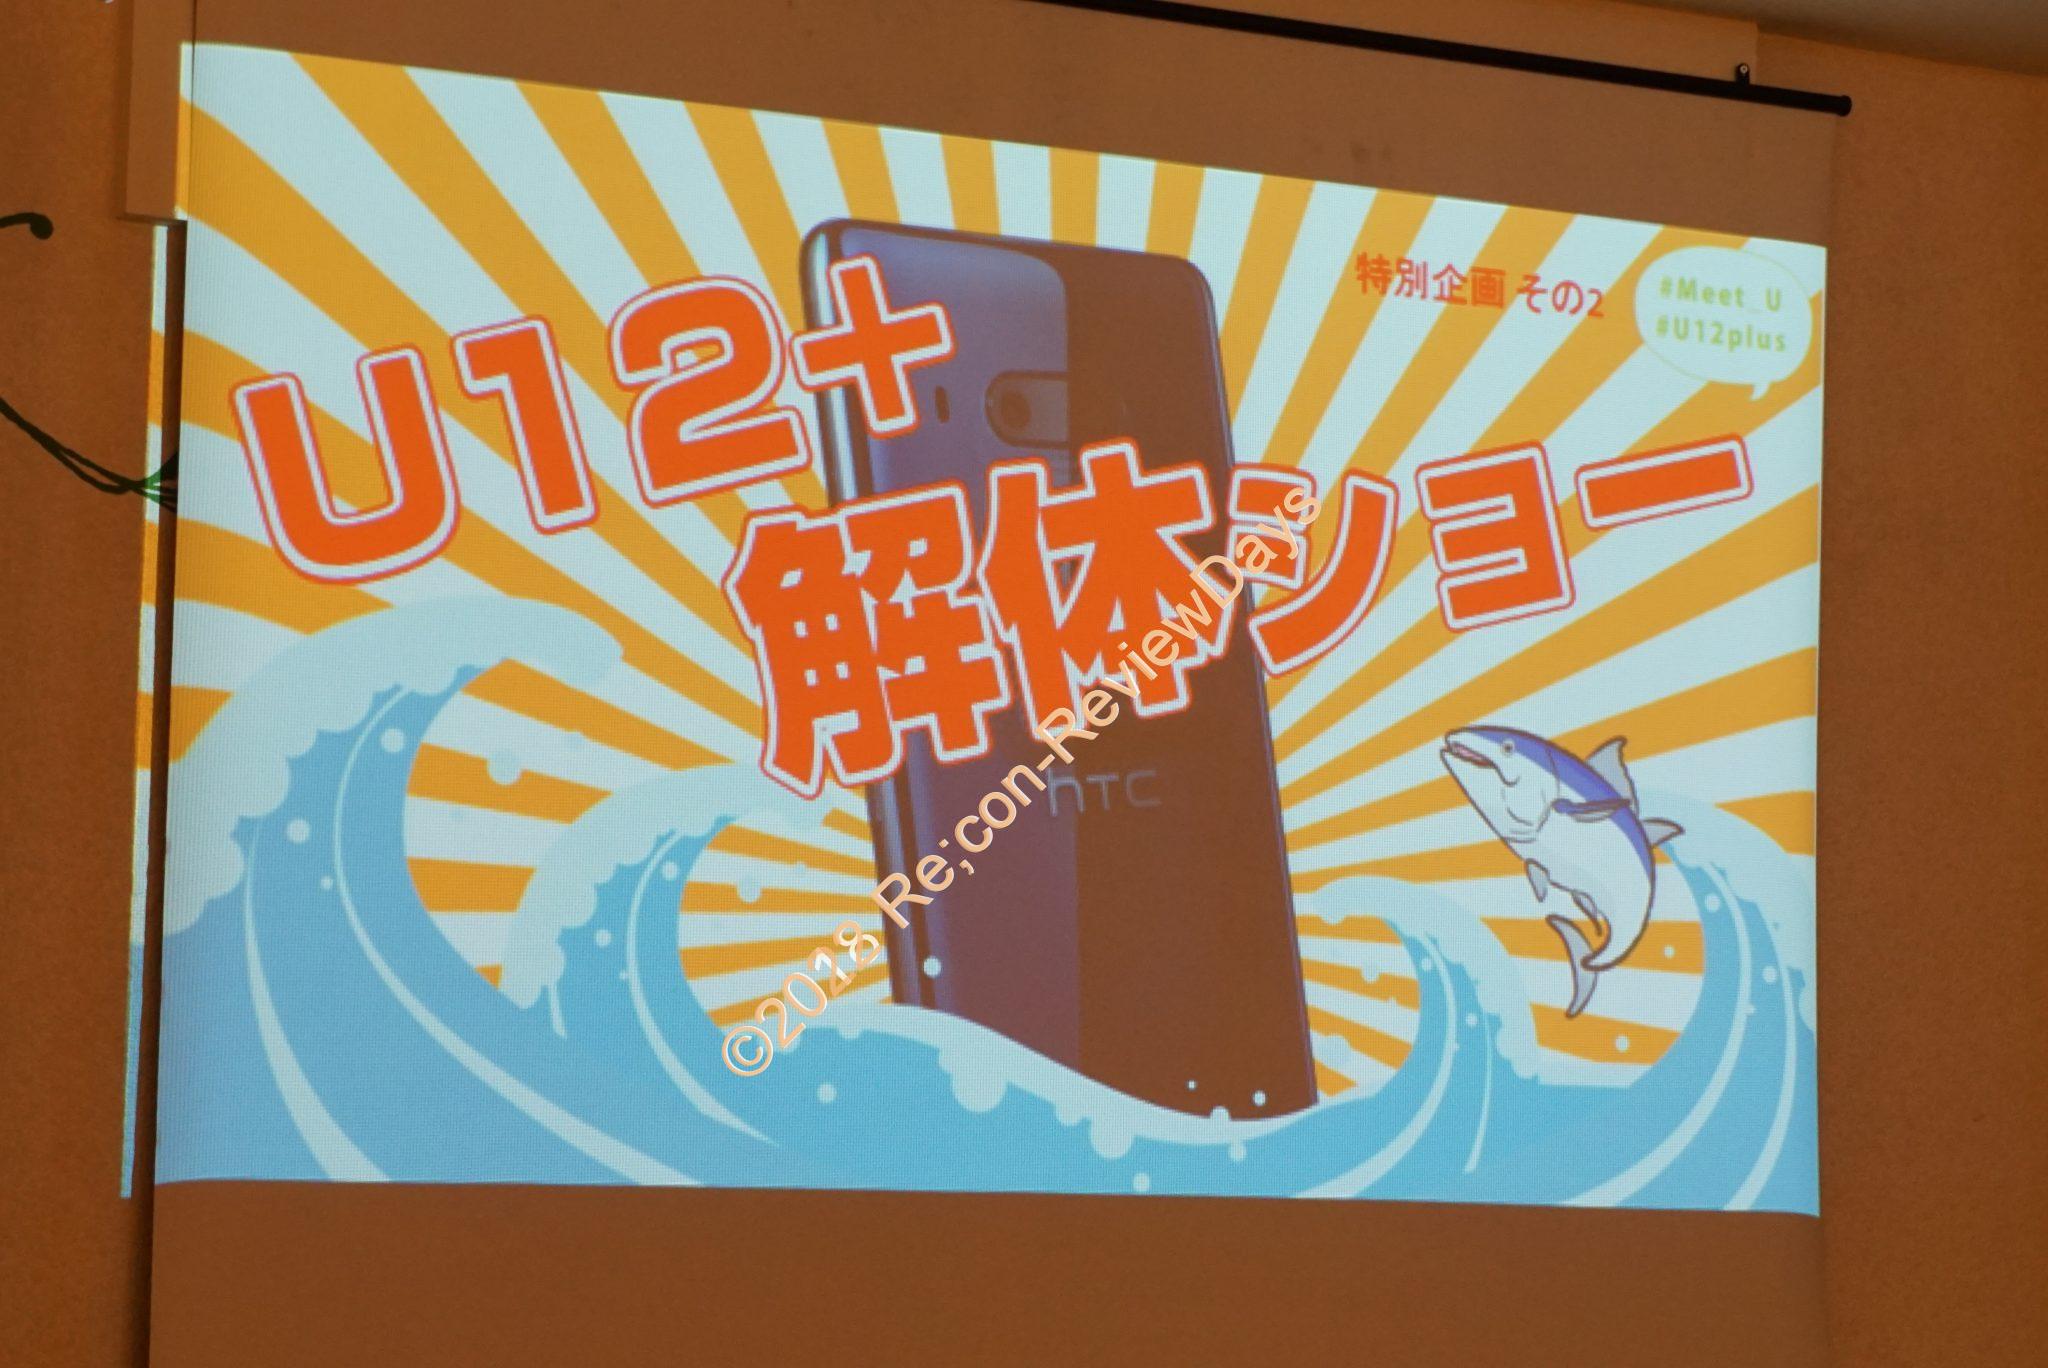 2018年9月28日に開催されたHTC Meet U 大阪会場のイベントレポート その2 U12+解体ショー  #HTC #Meet_U #U12Plus